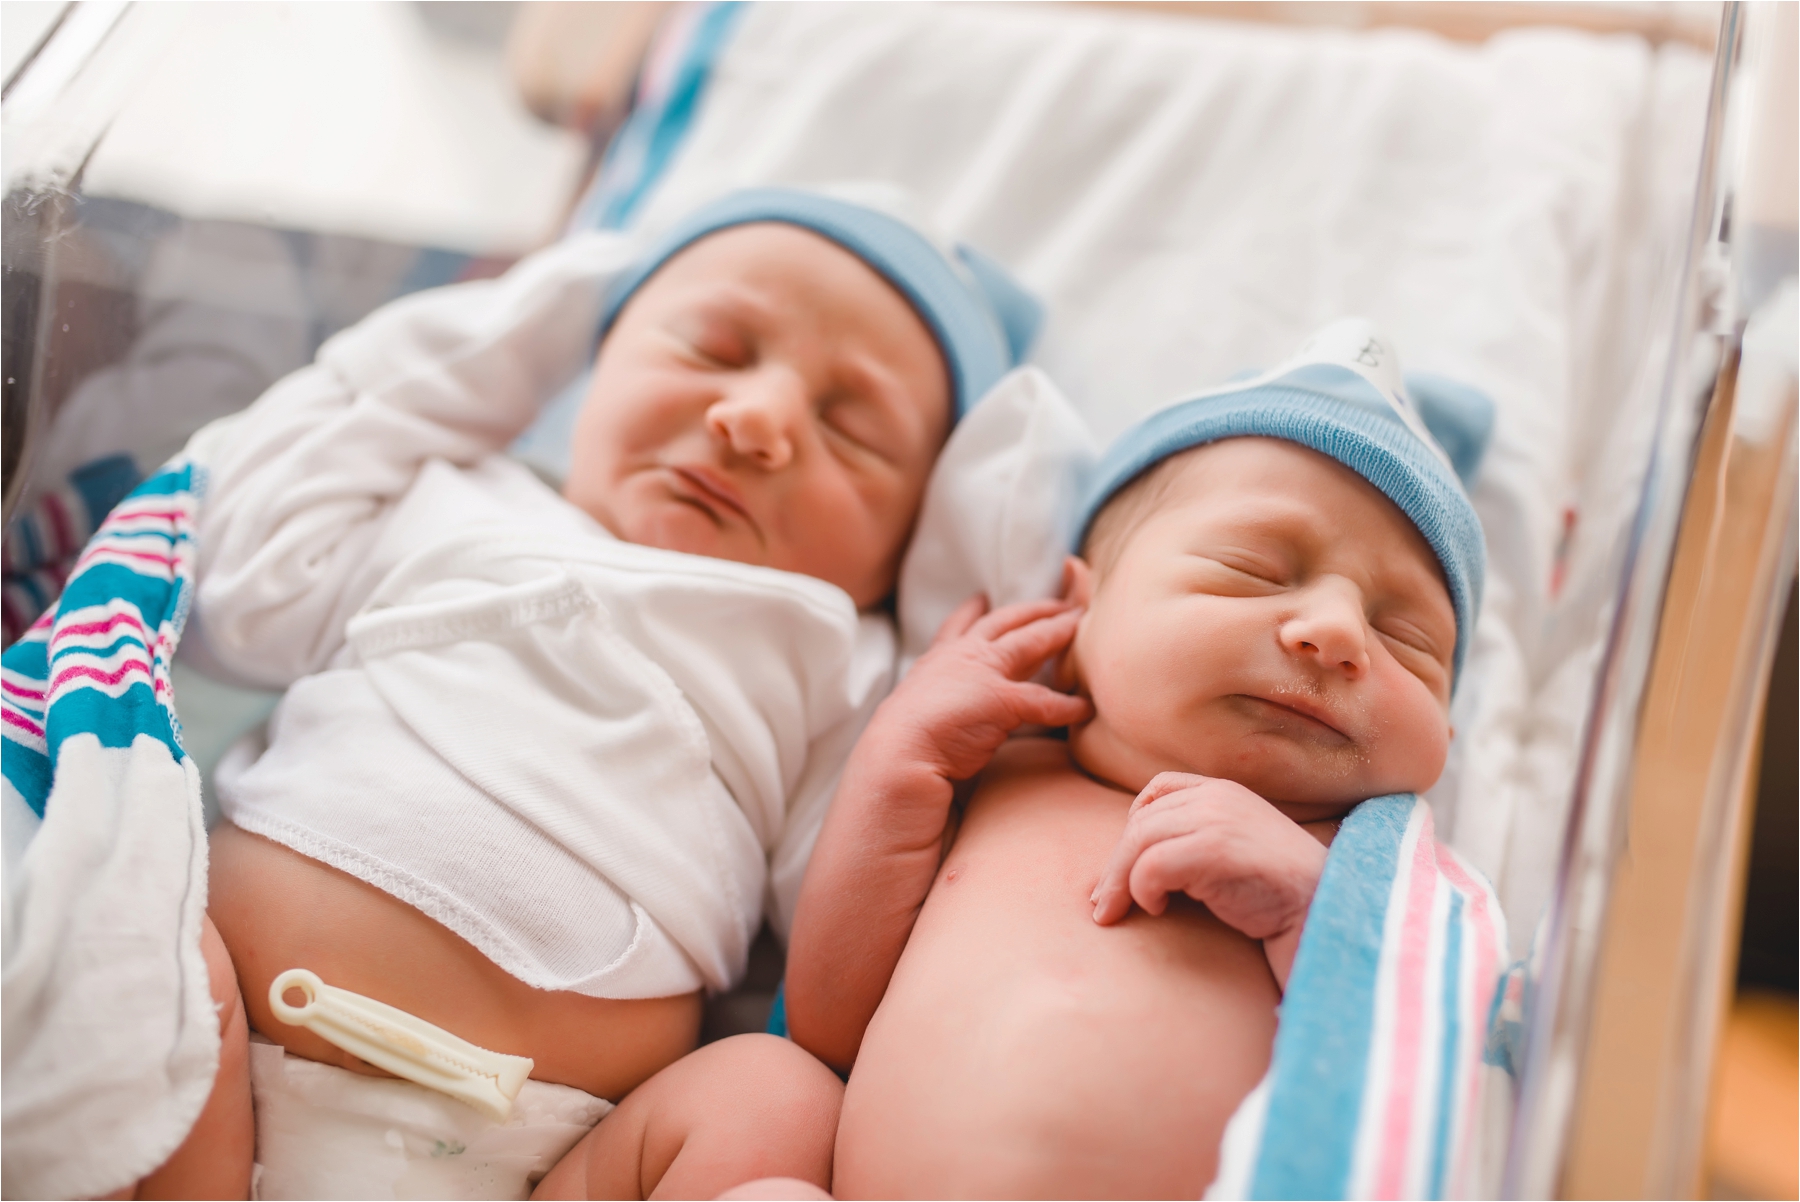 Nëna 20-vjeçare sjell në jetë binjakët një muaj pasi lindi djalin